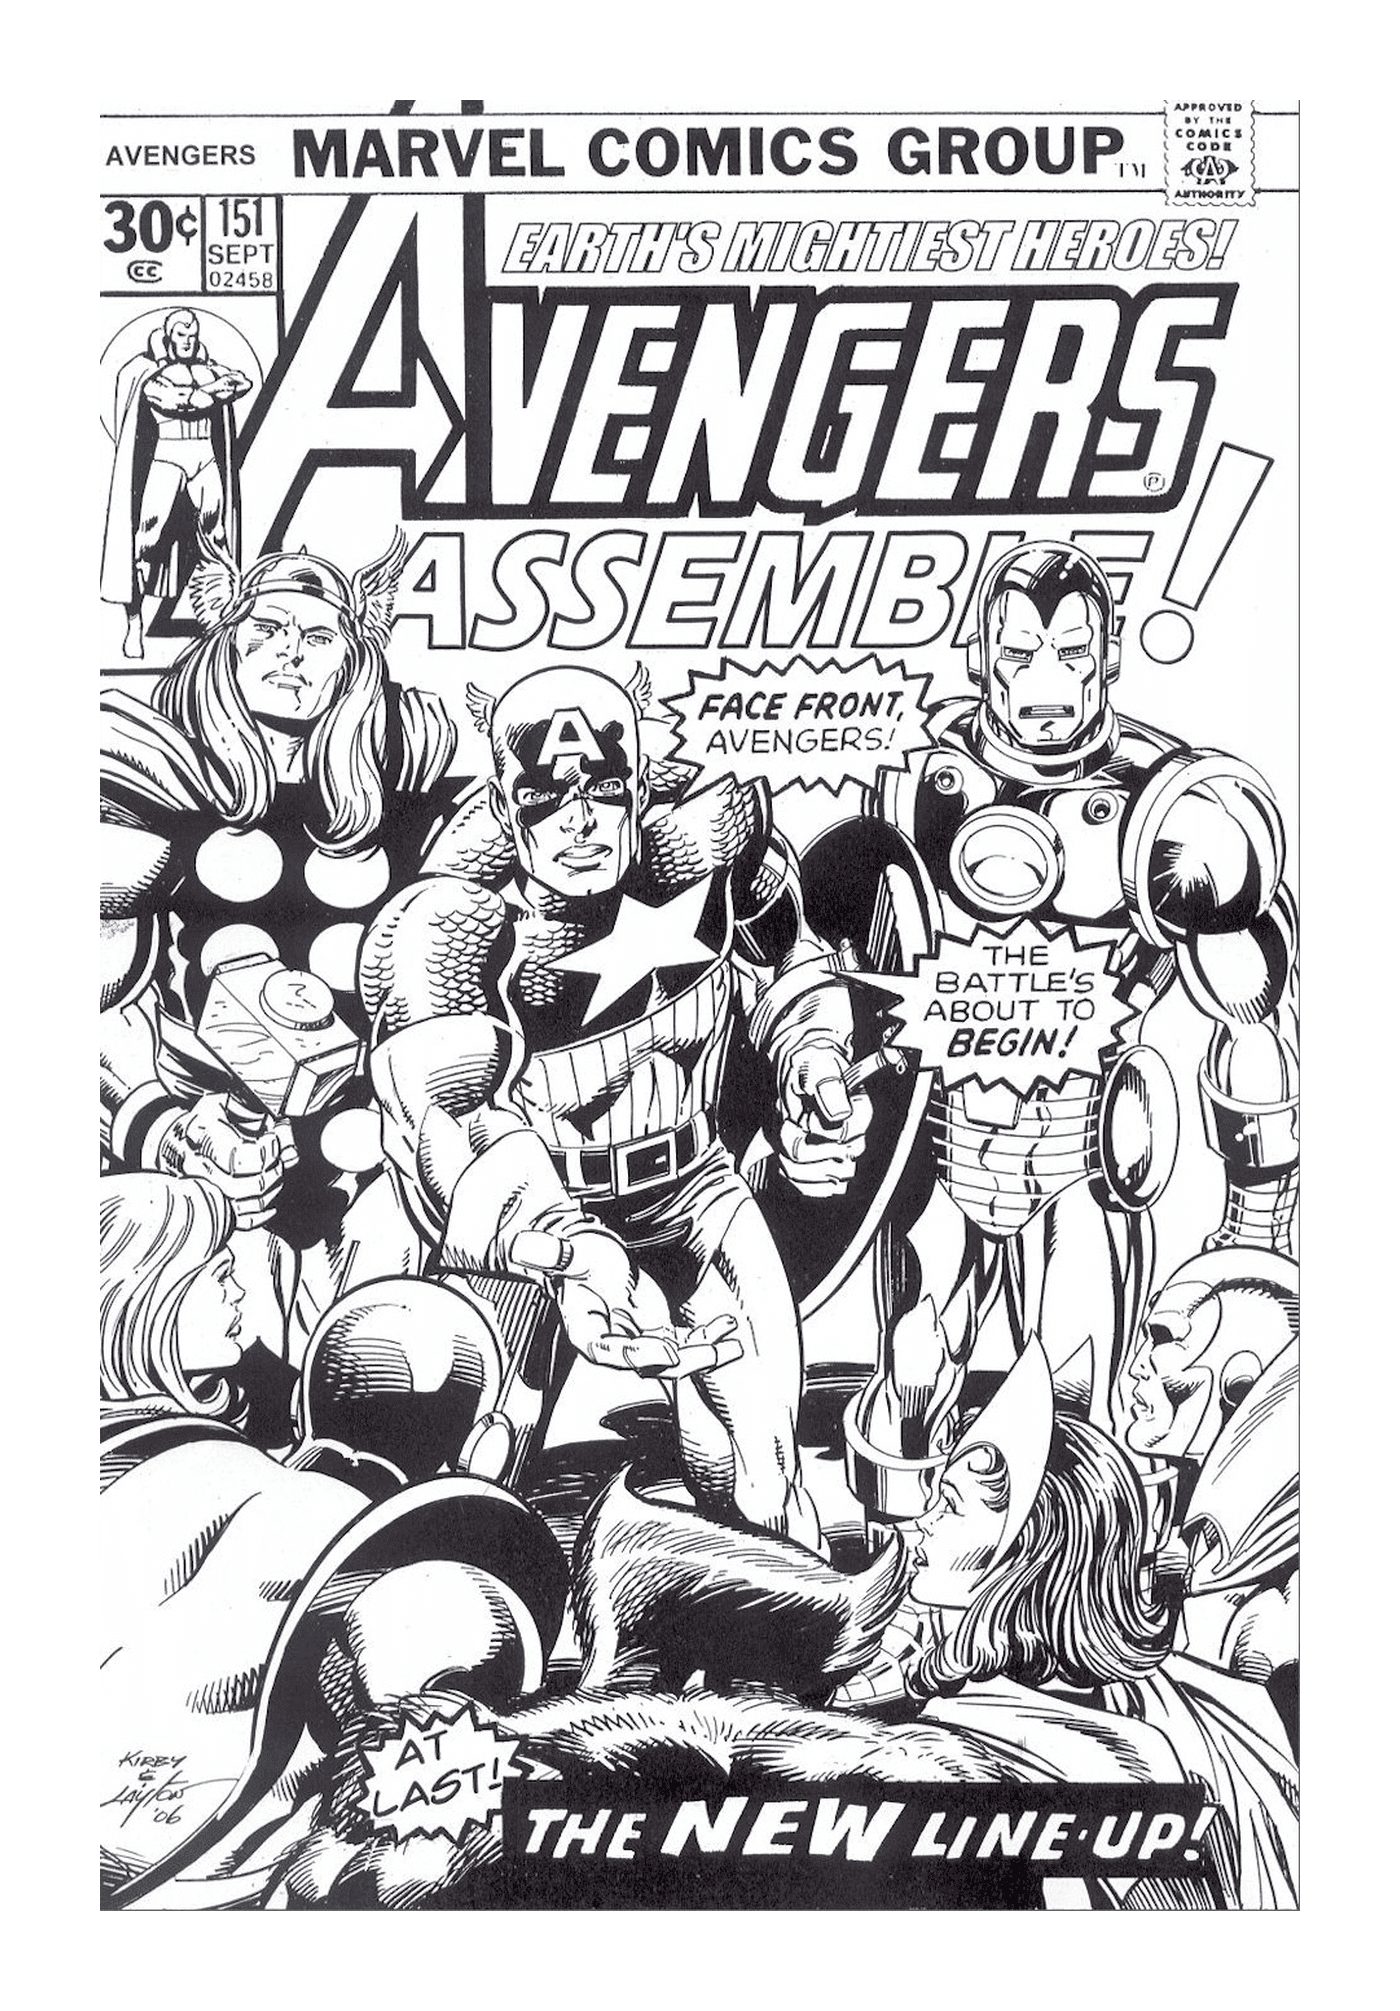  Una copertina di fumetti Marvel con un gruppo di supereroi 